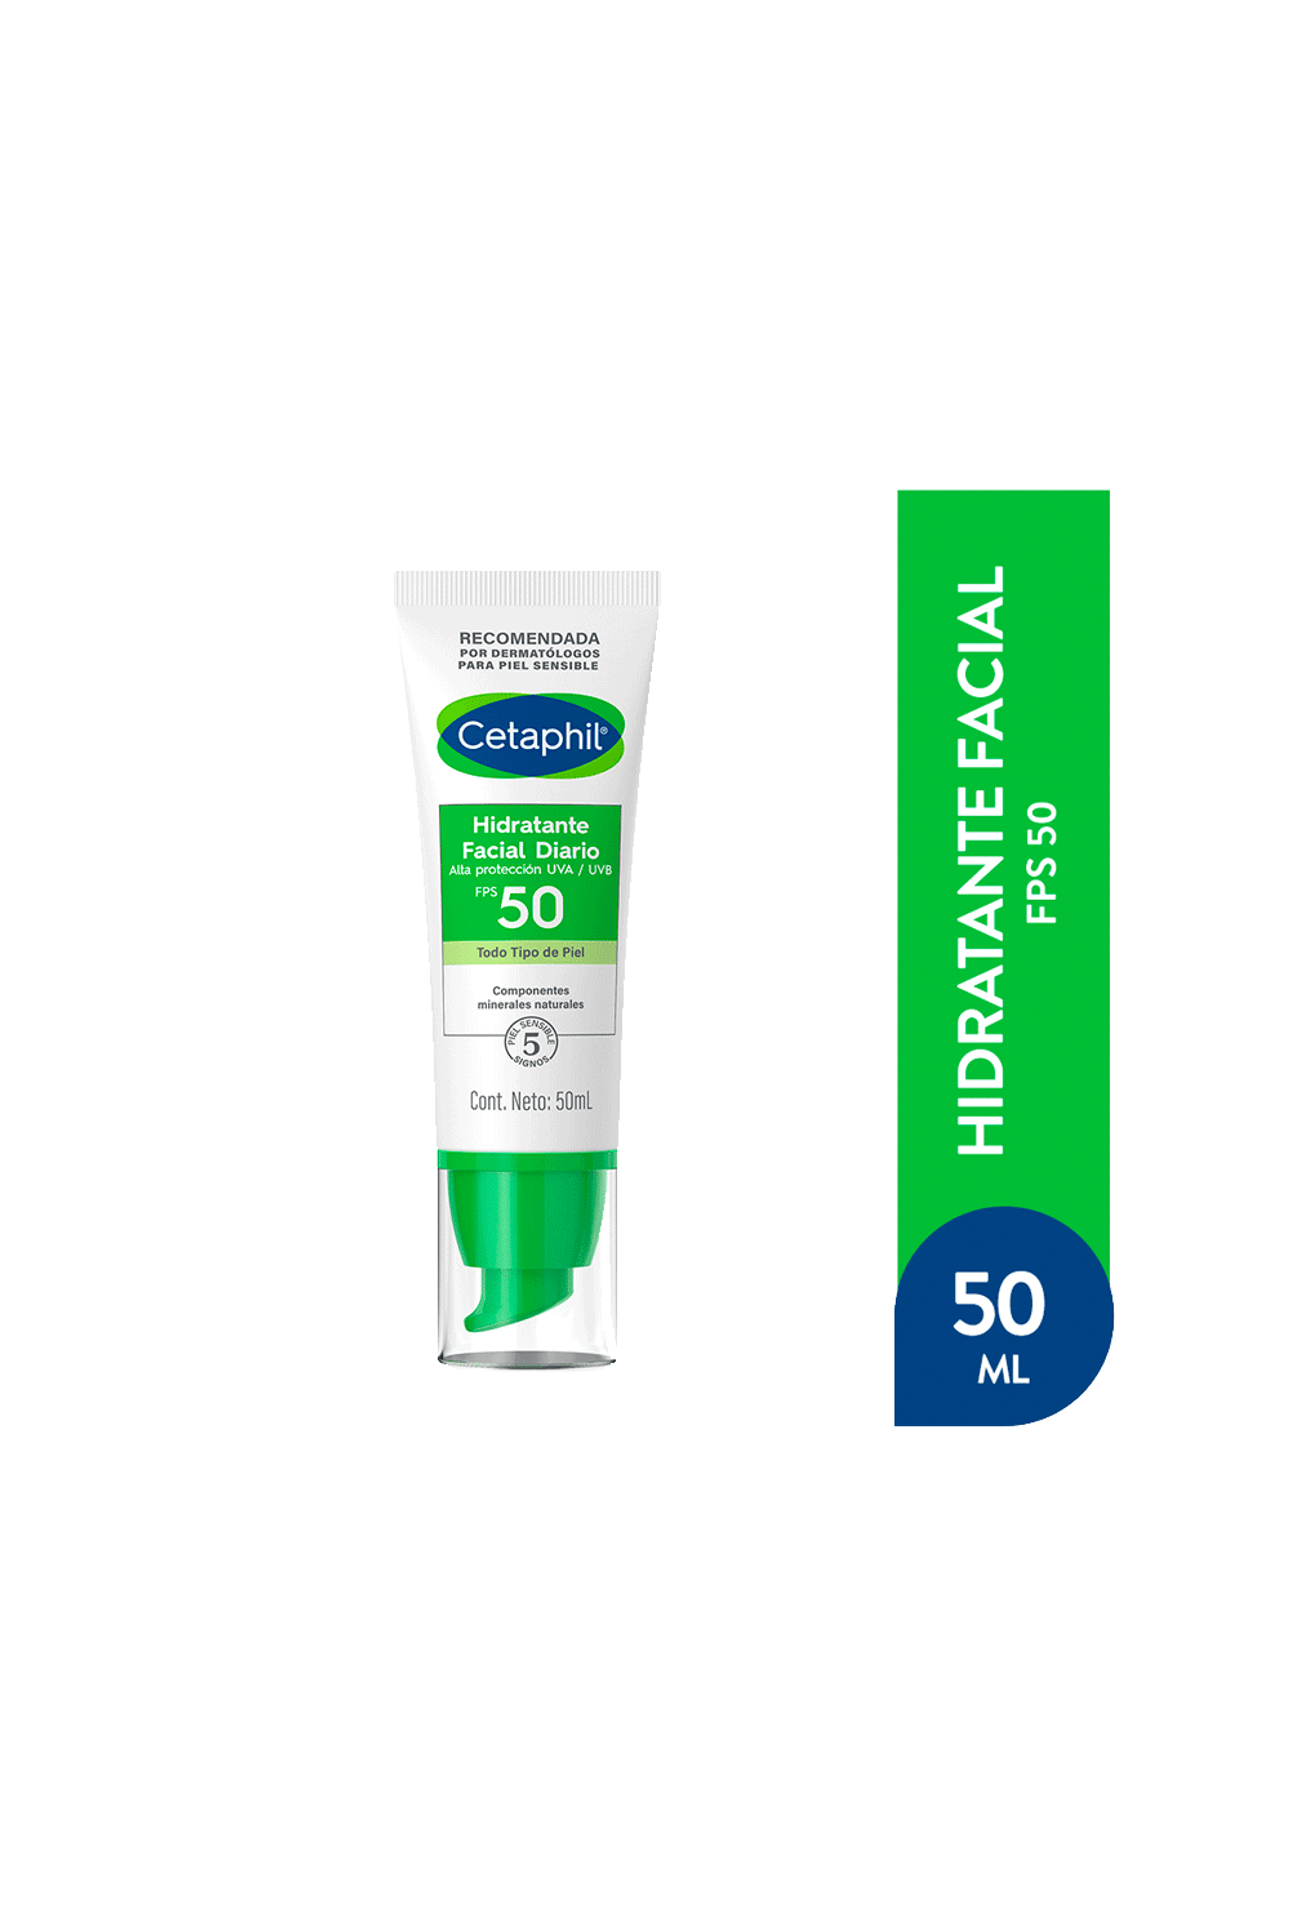 Cetaphil-Hidratante-facial-diario-Cetaphil-FPS50-x-50-ml-3499320004541